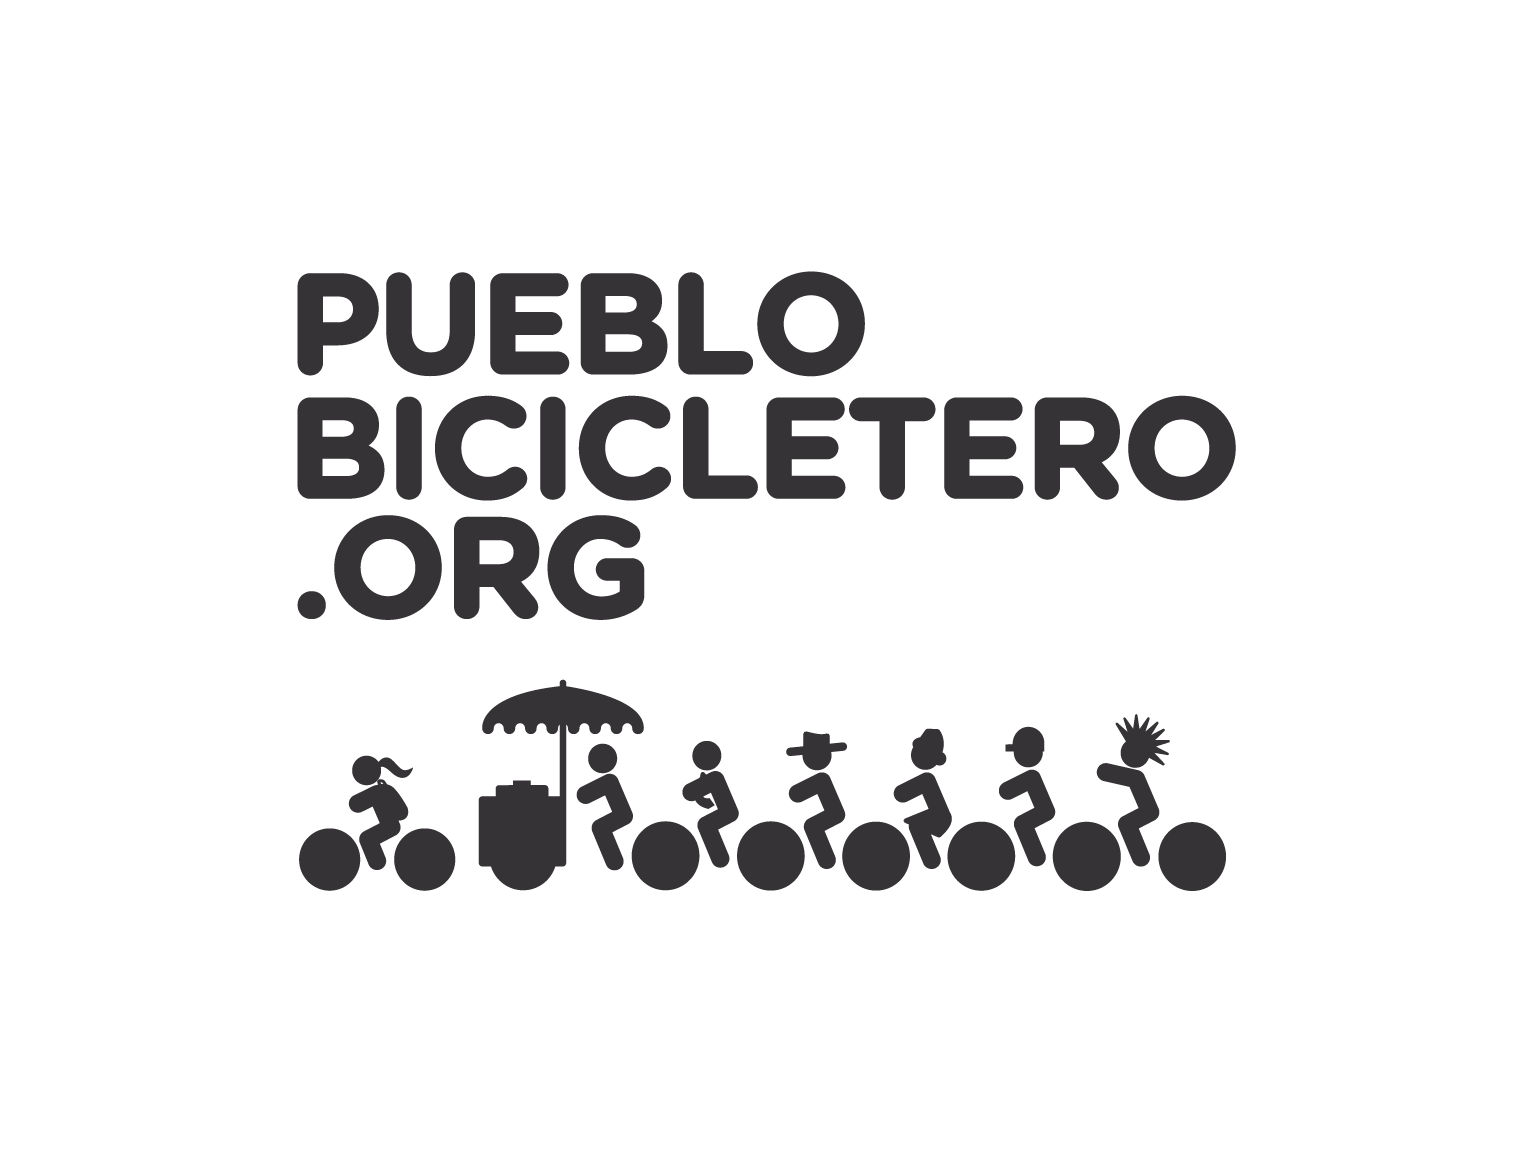 Pueblo Bicicletero, Mexico